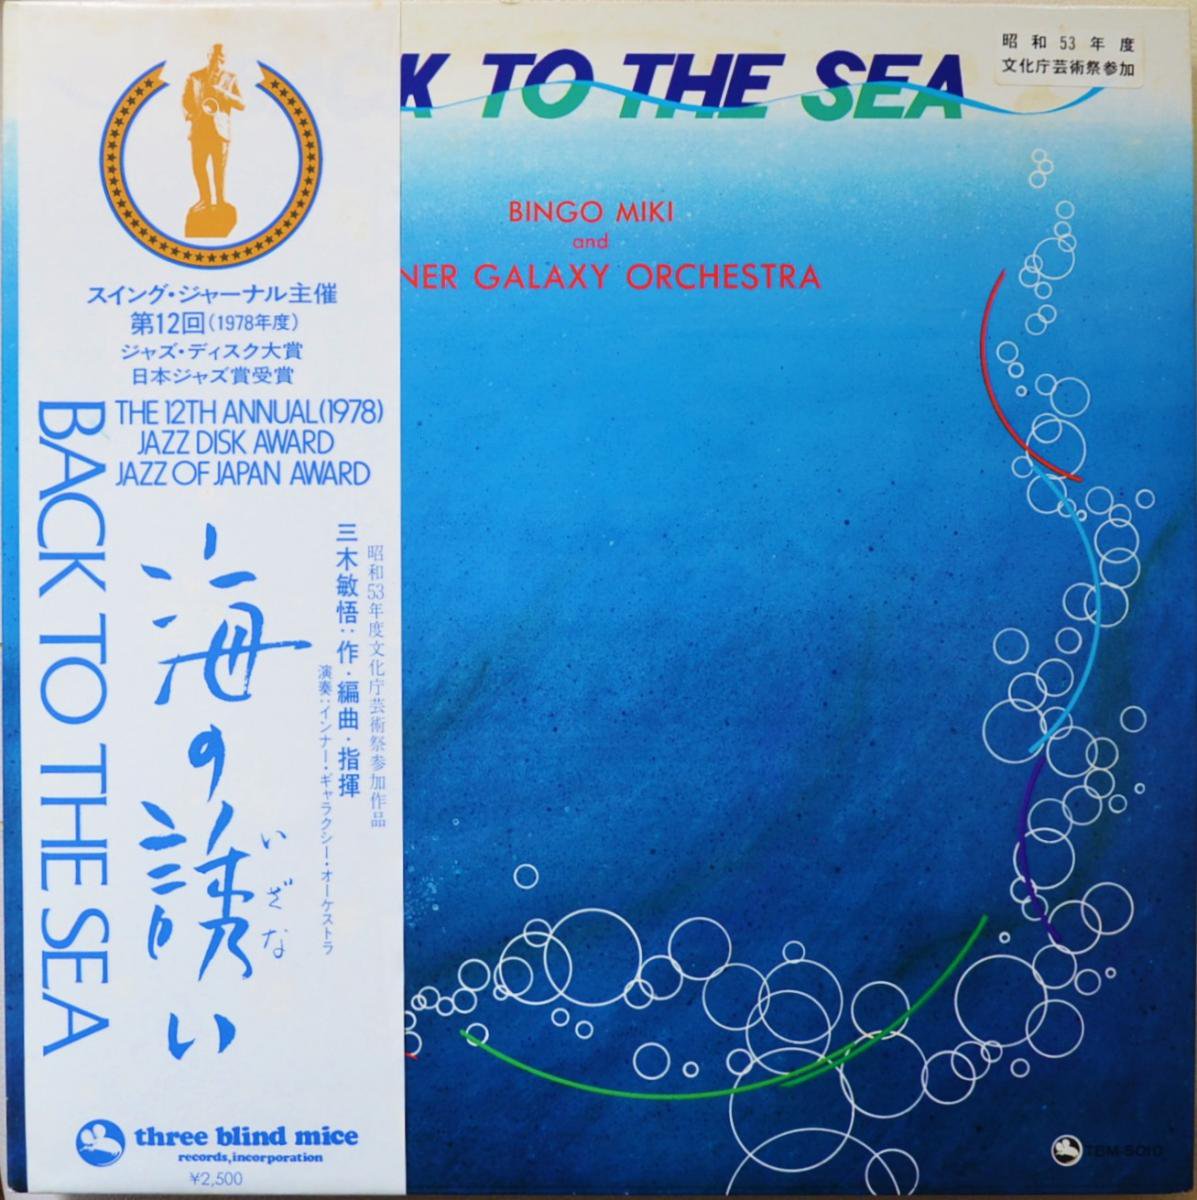 三木敏悟 BINGO MIKI AND INNERGALAXY ORCHESTRA / 海の誘い BACK TO THE SEA (LP)